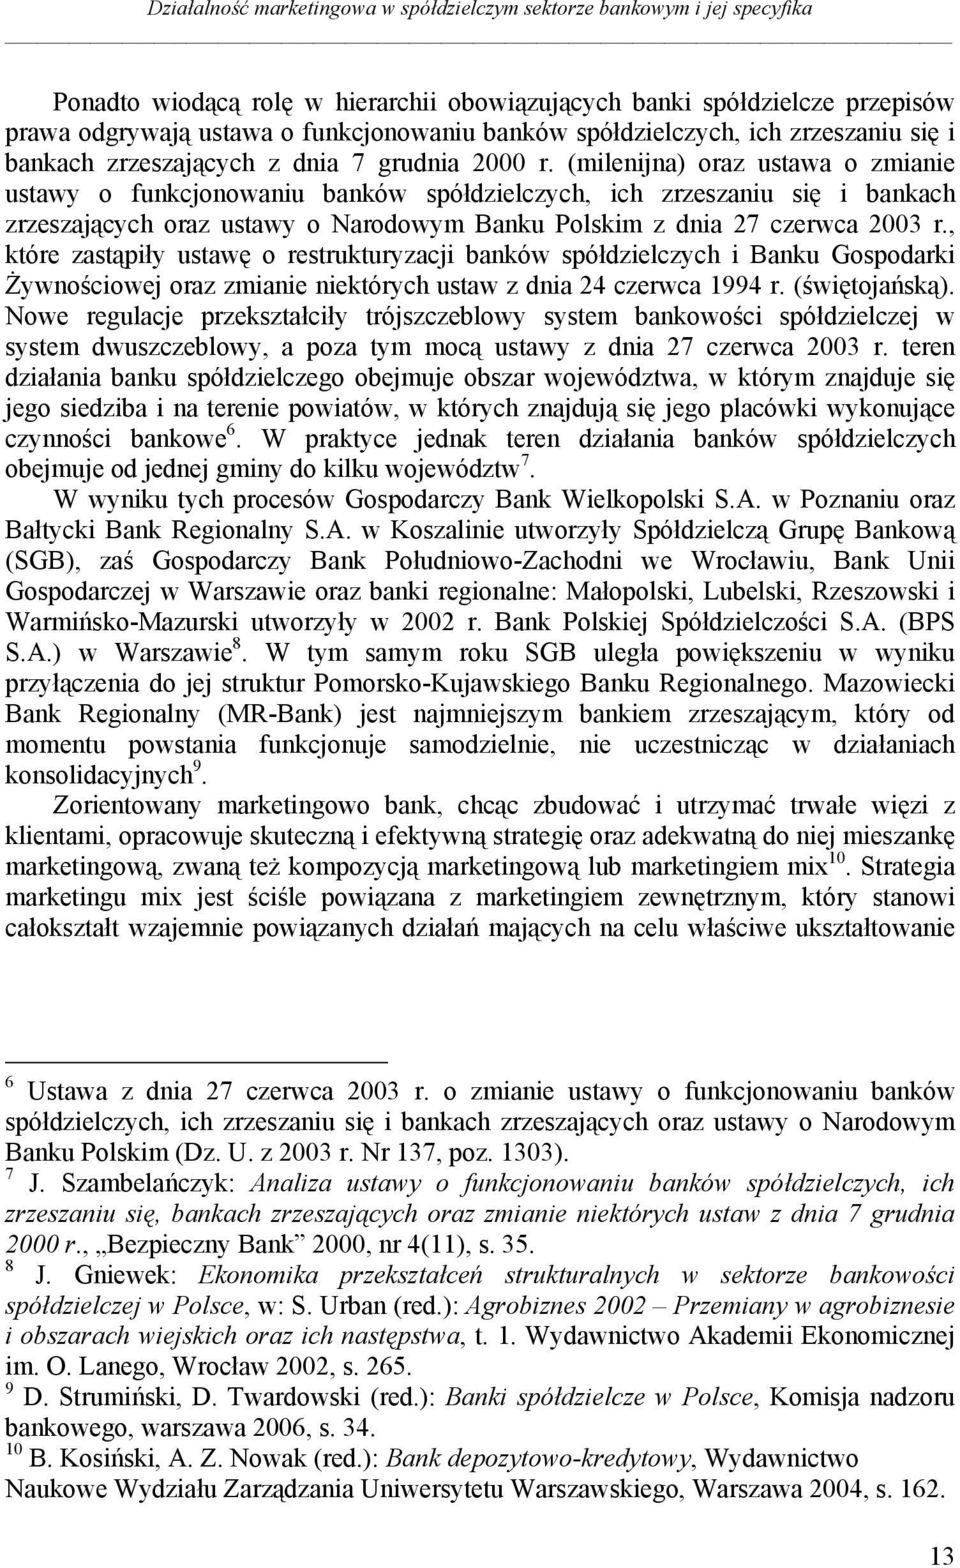 (milenijna) oraz ustawa o zmianie ustawy o funkcjonowaniu banków spółdzielczych, ich zrzeszaniu się i bankach zrzeszających oraz ustawy o Narodowym Banku Polskim z dnia 27 czerwca 2003 r.